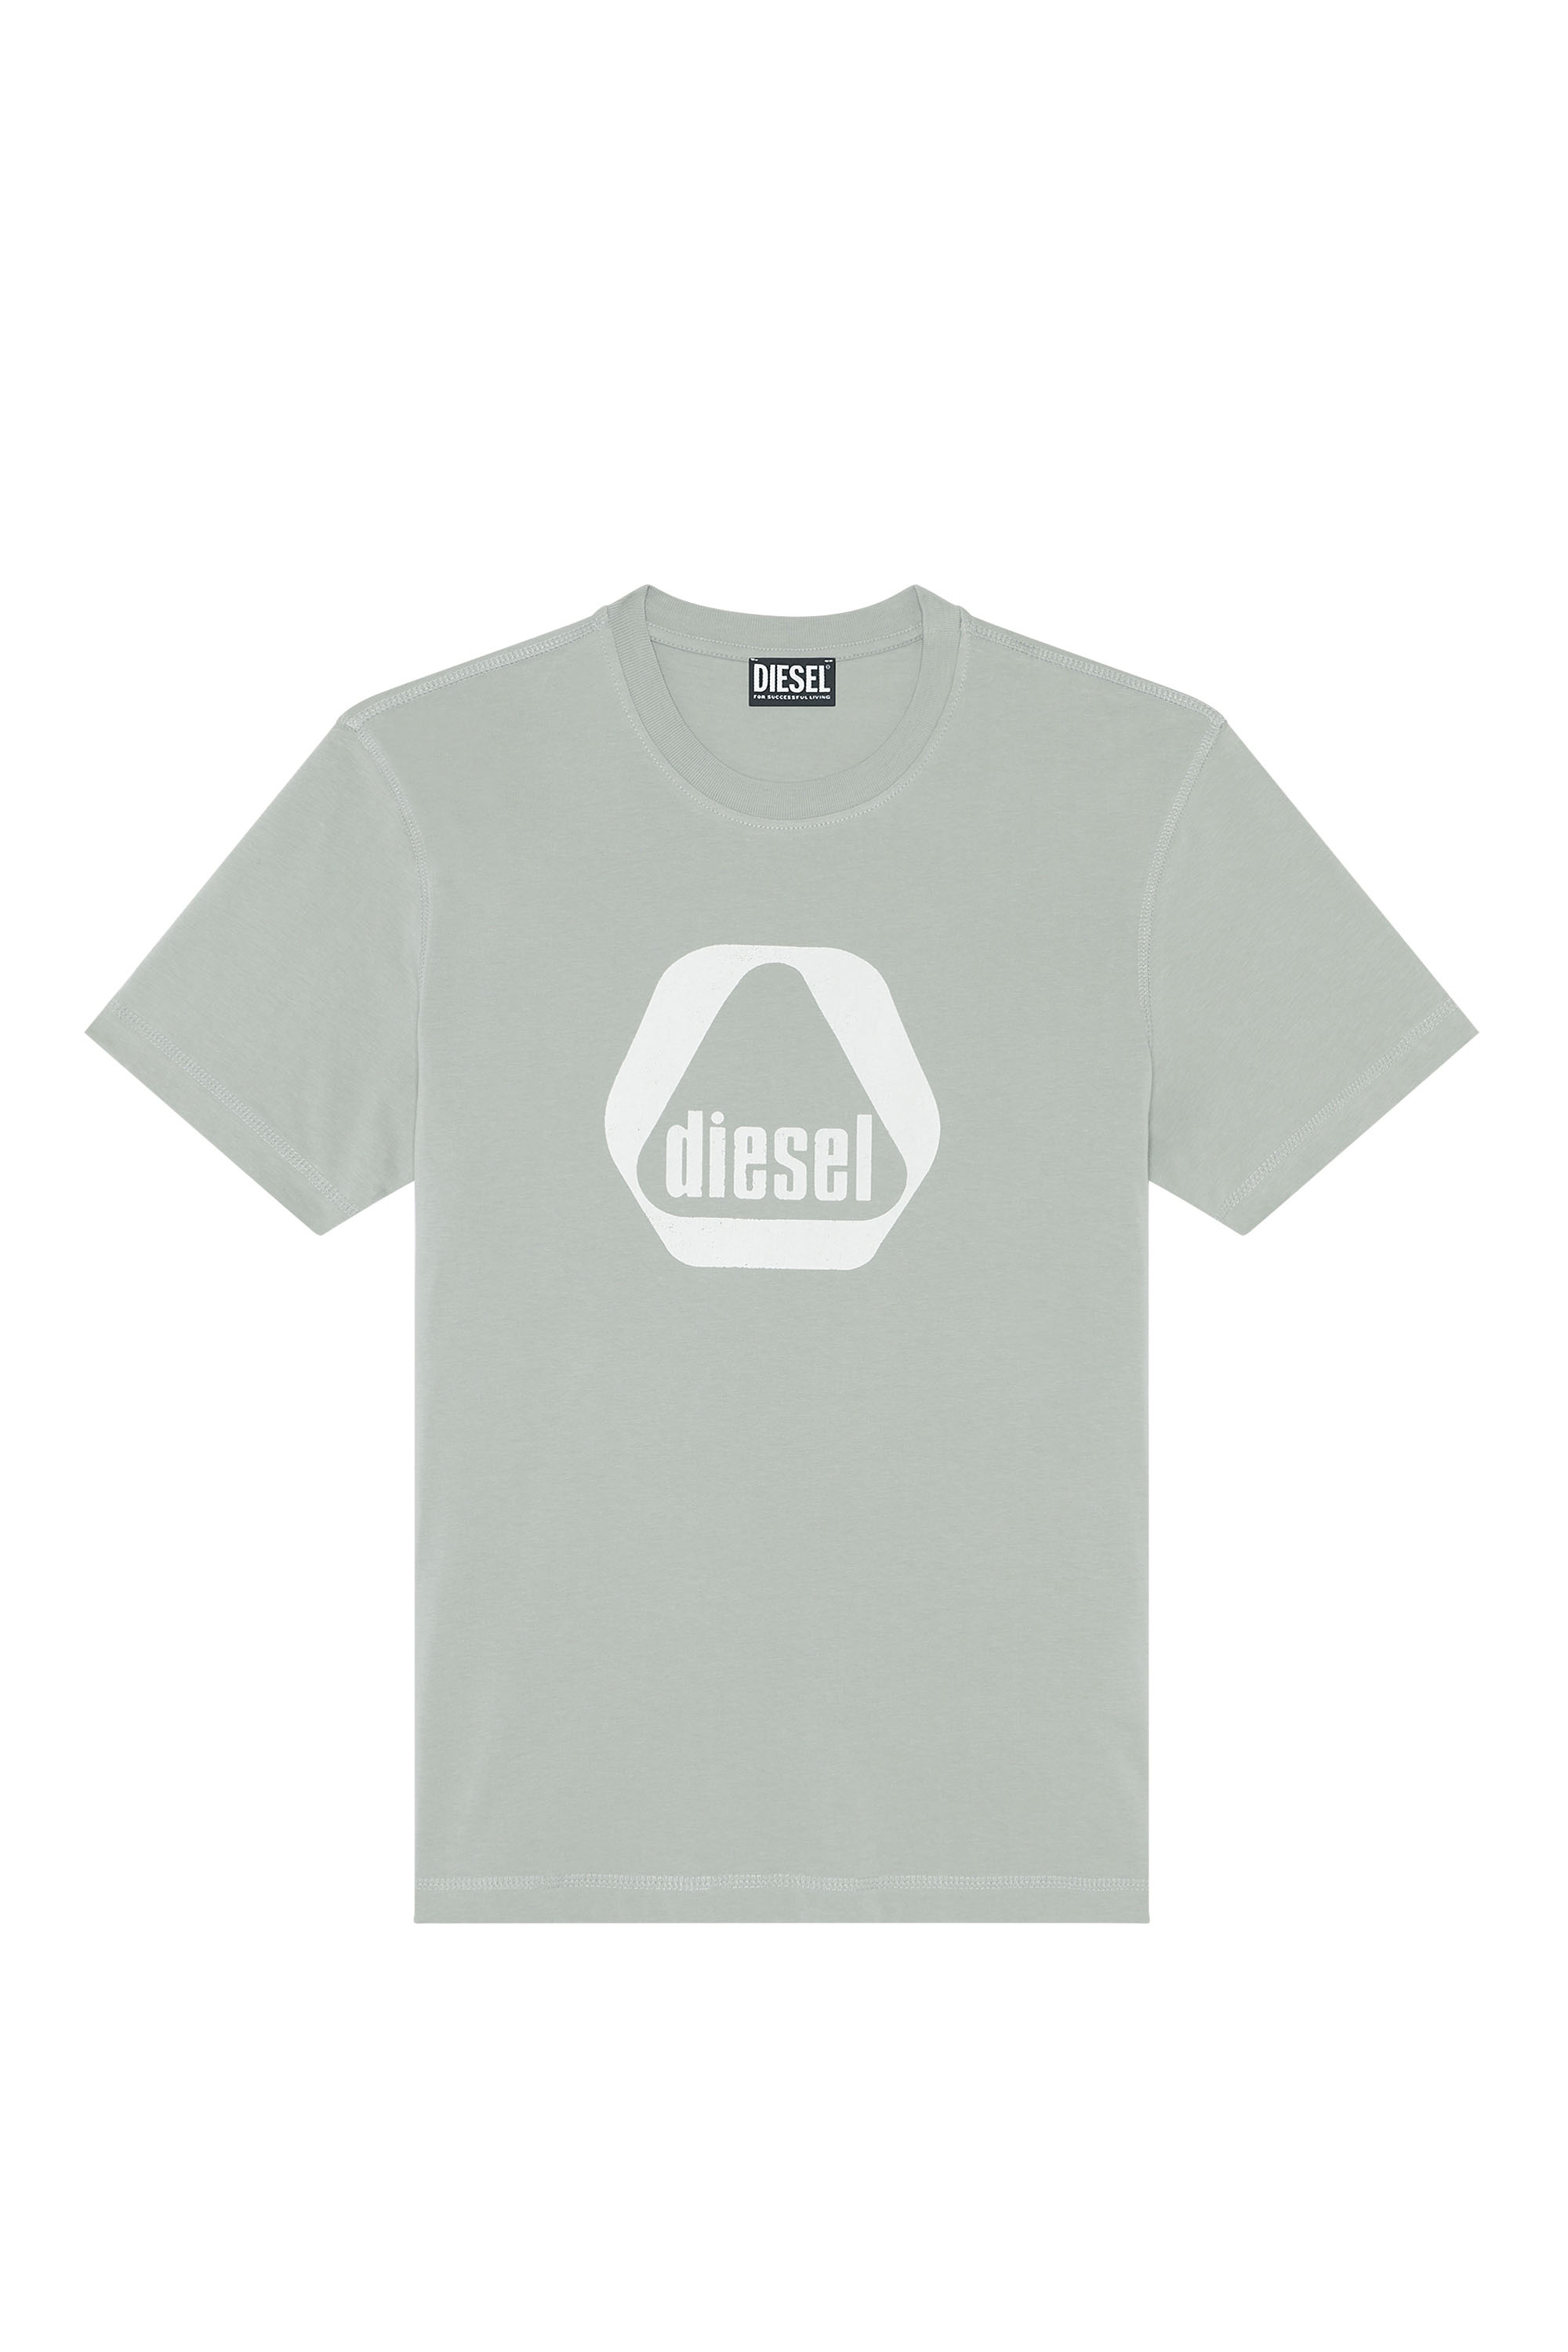 Diesel - T-DIEGOR-G10, Grey - Image 3